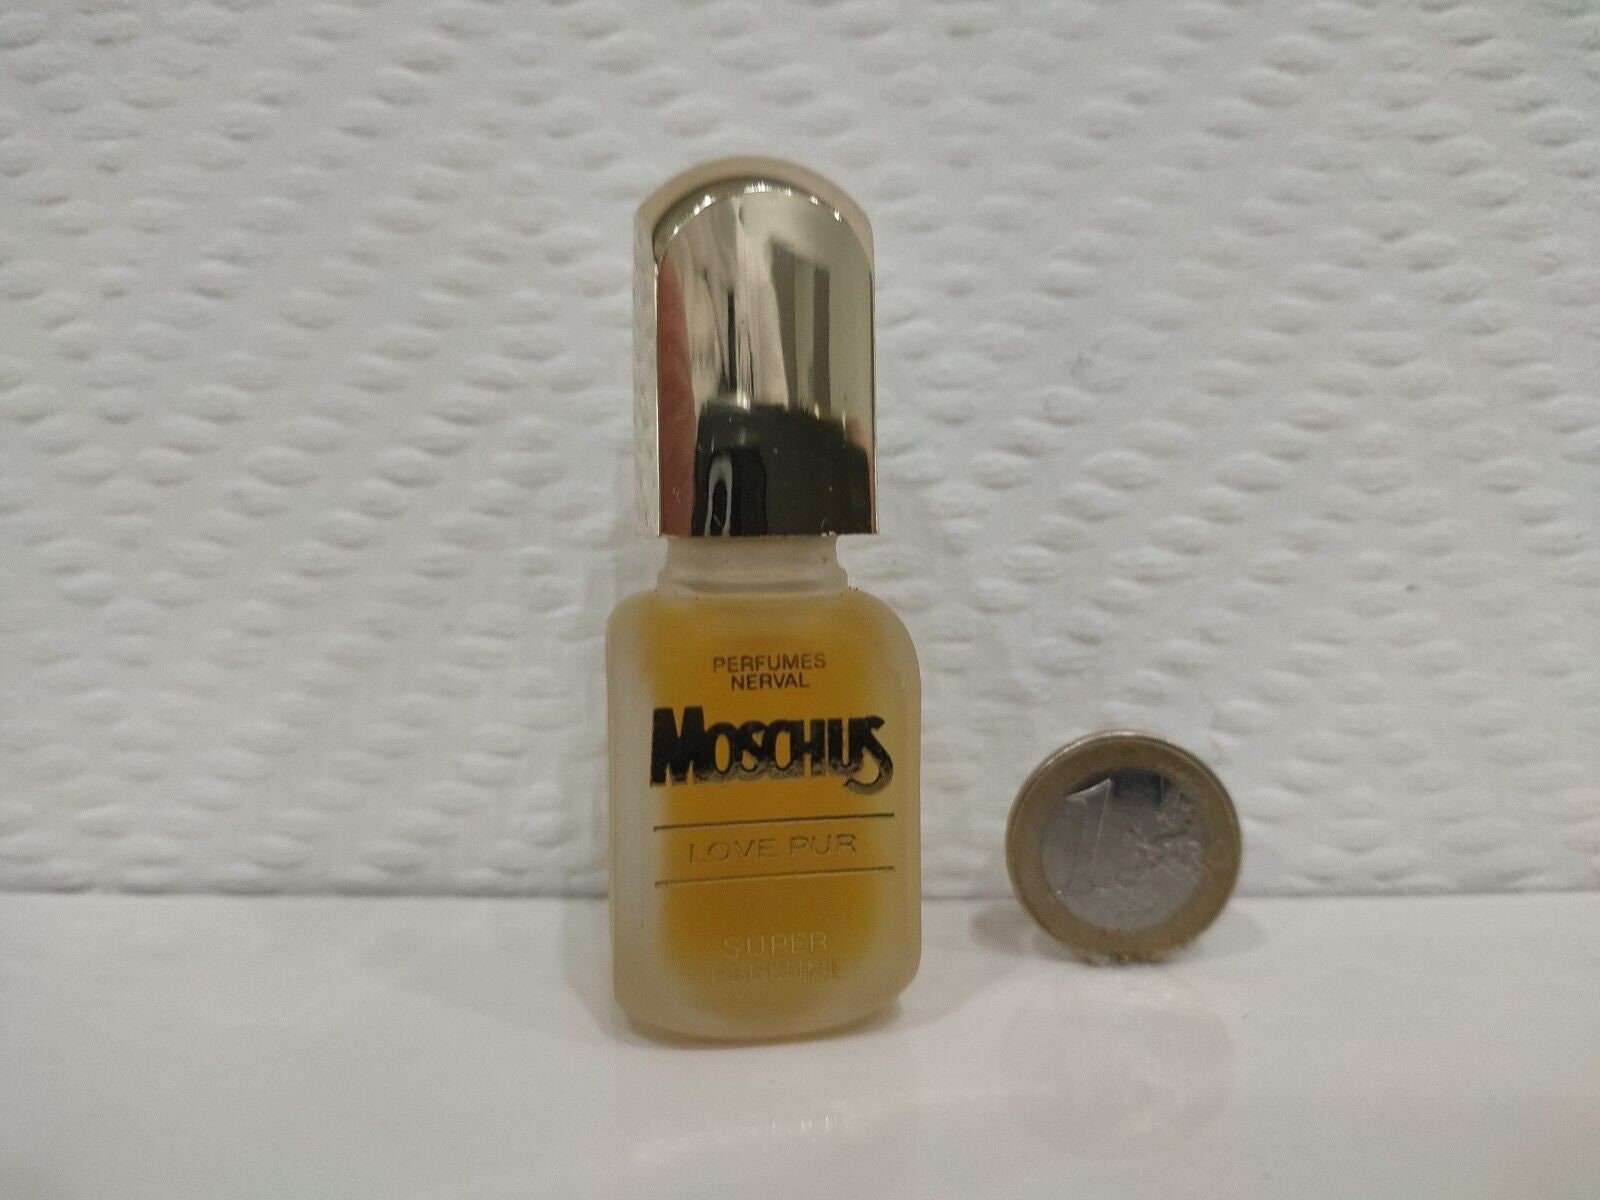 Nervöse Moschus Liebe Pur Super Parfüm 9, 5 Ml Rar Vintage von miniperfumes